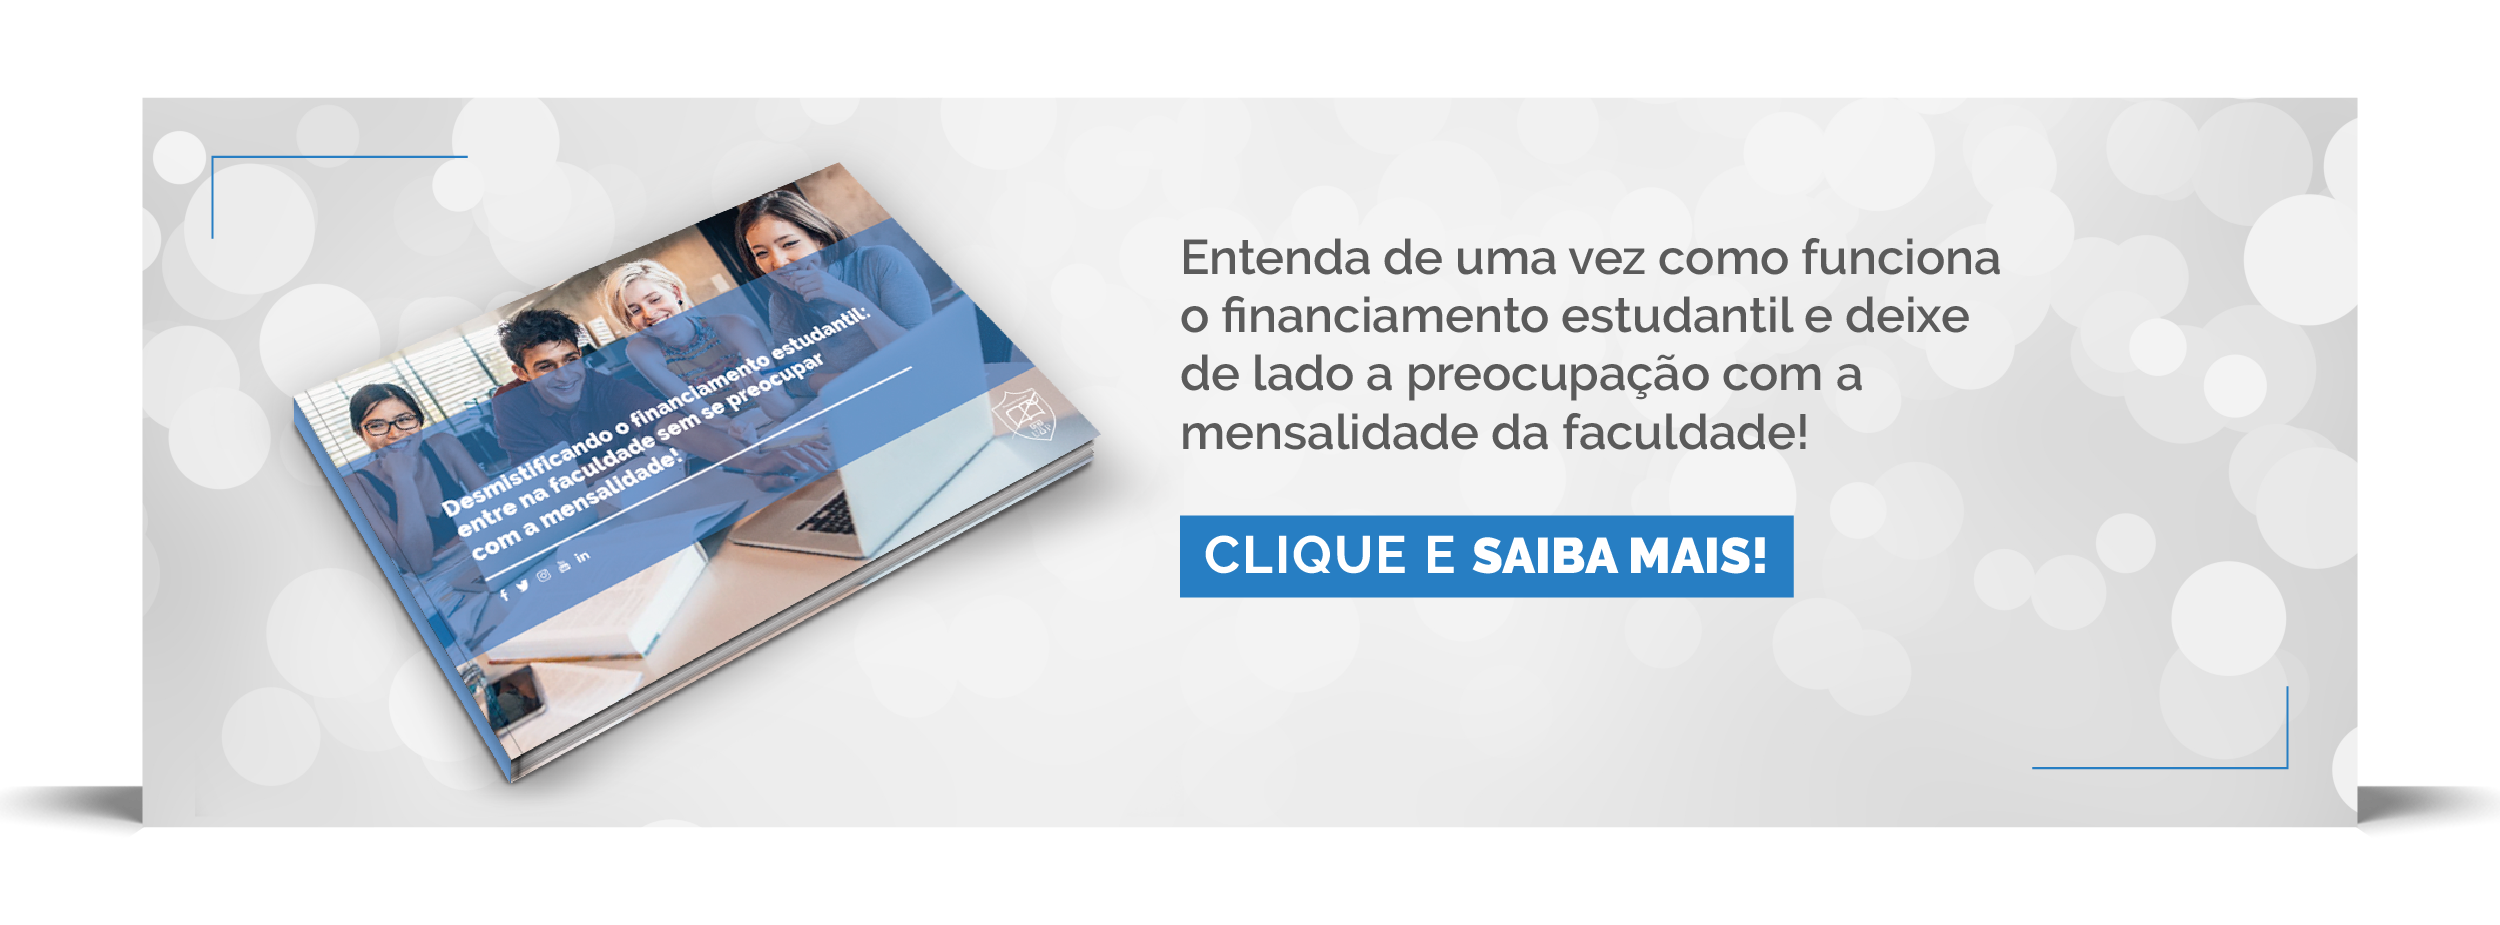 Faça o download do ebook para entender como funciona o Financiamento Estudantil!